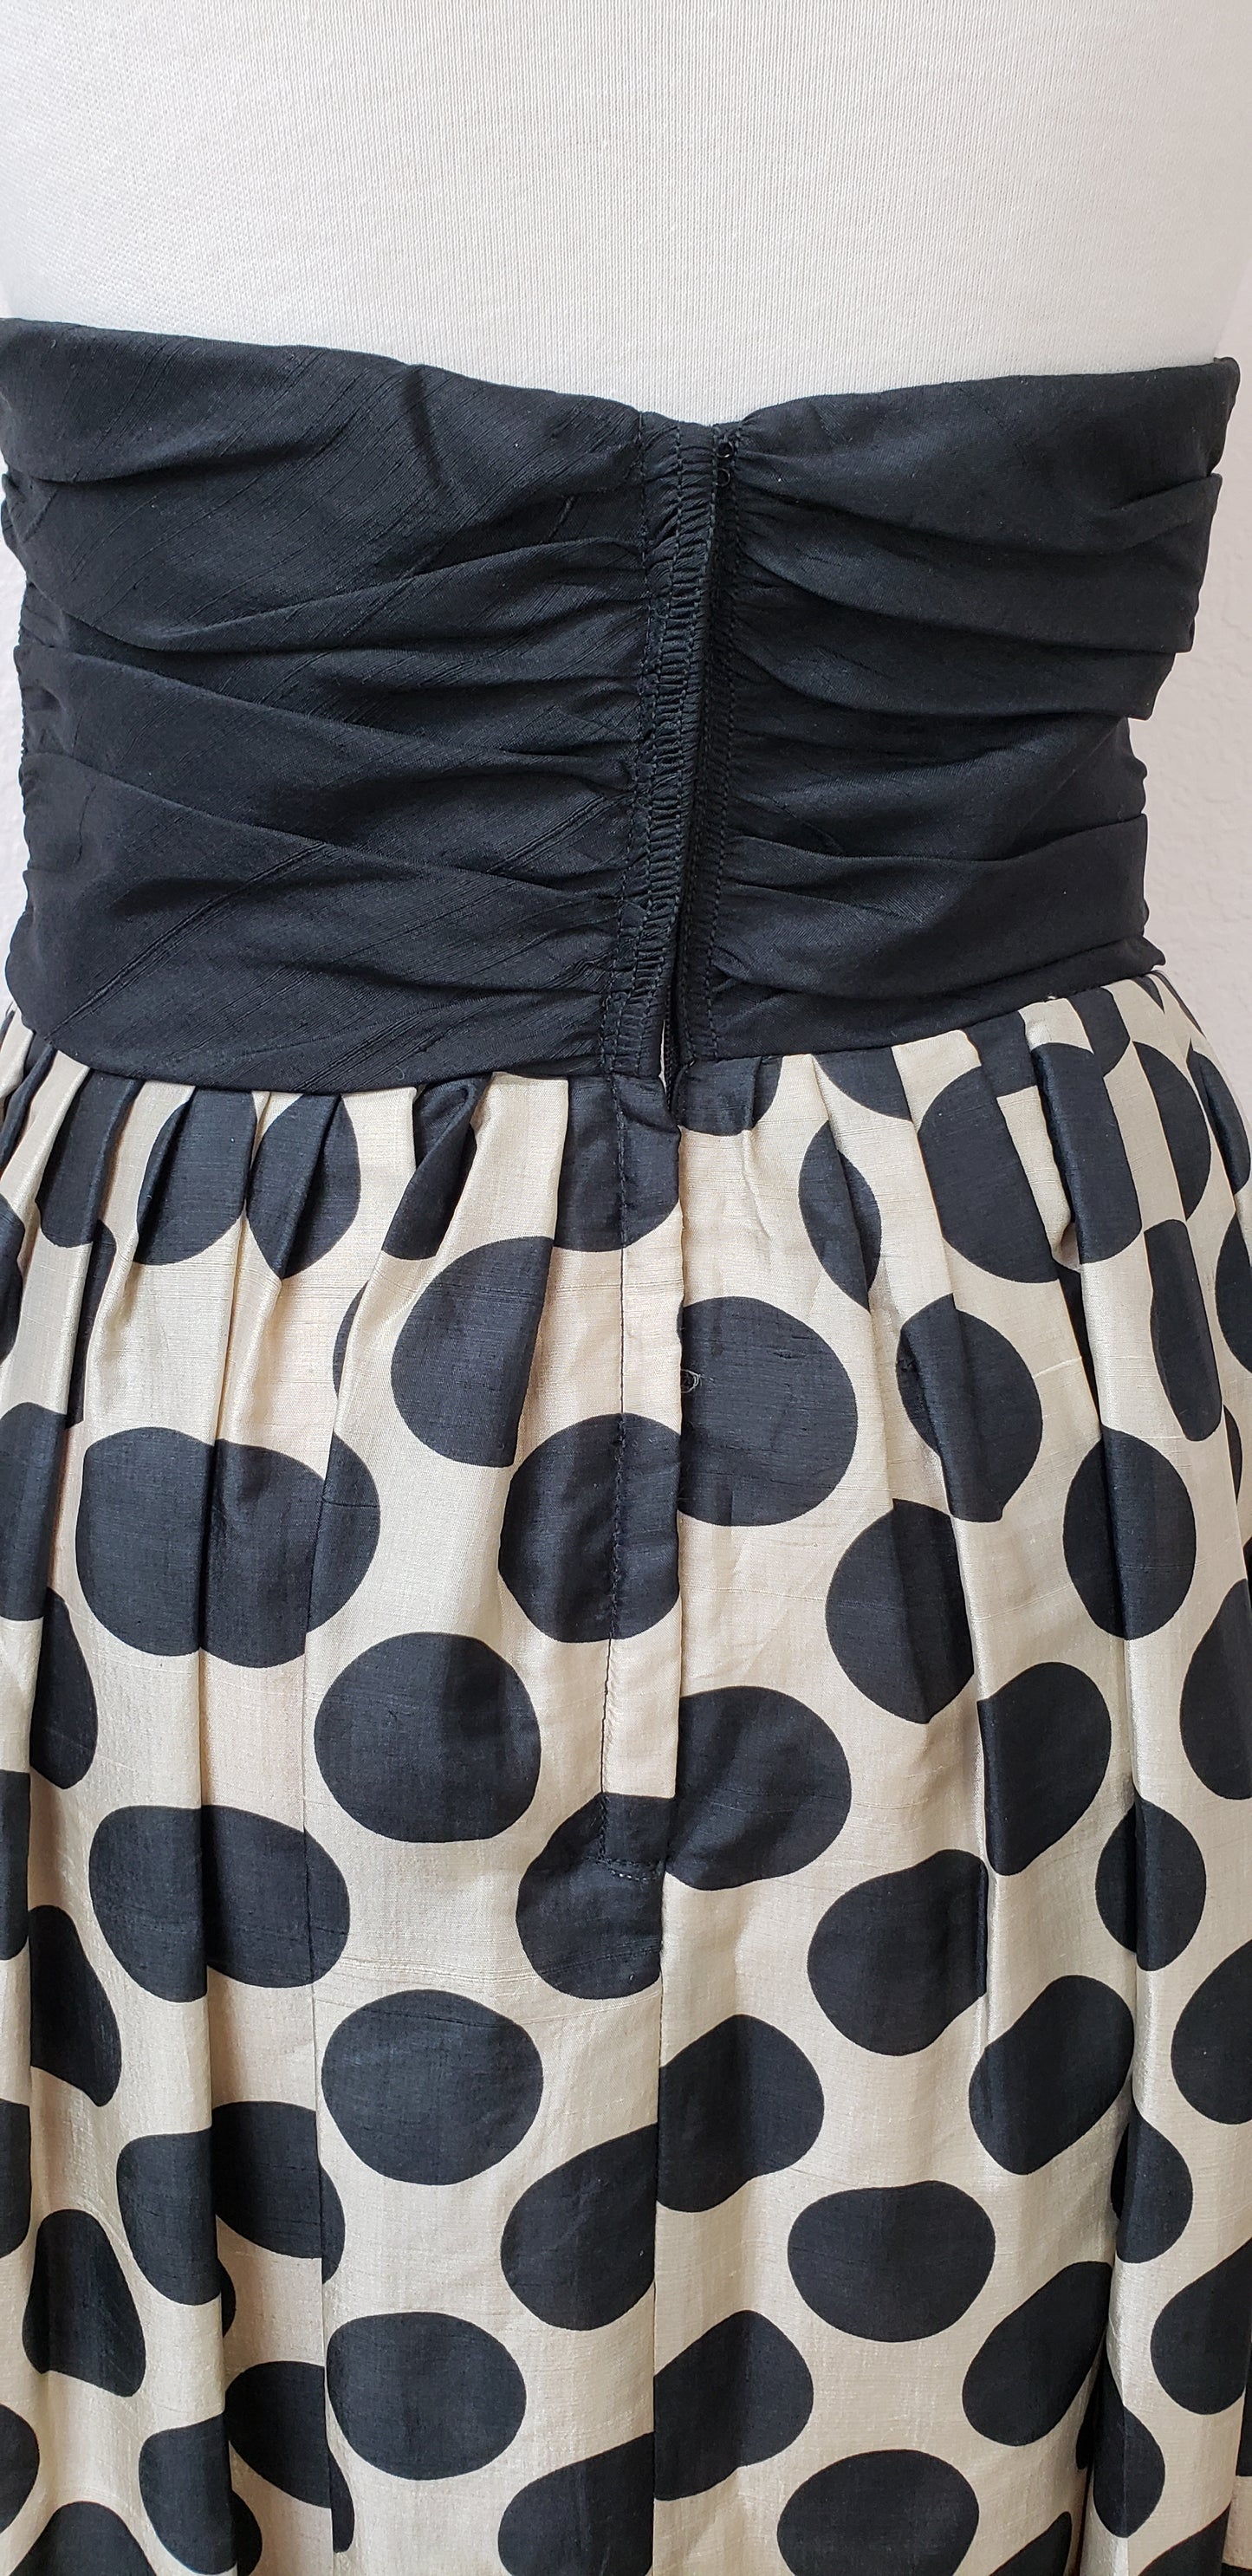 Vintage polka dot skirt